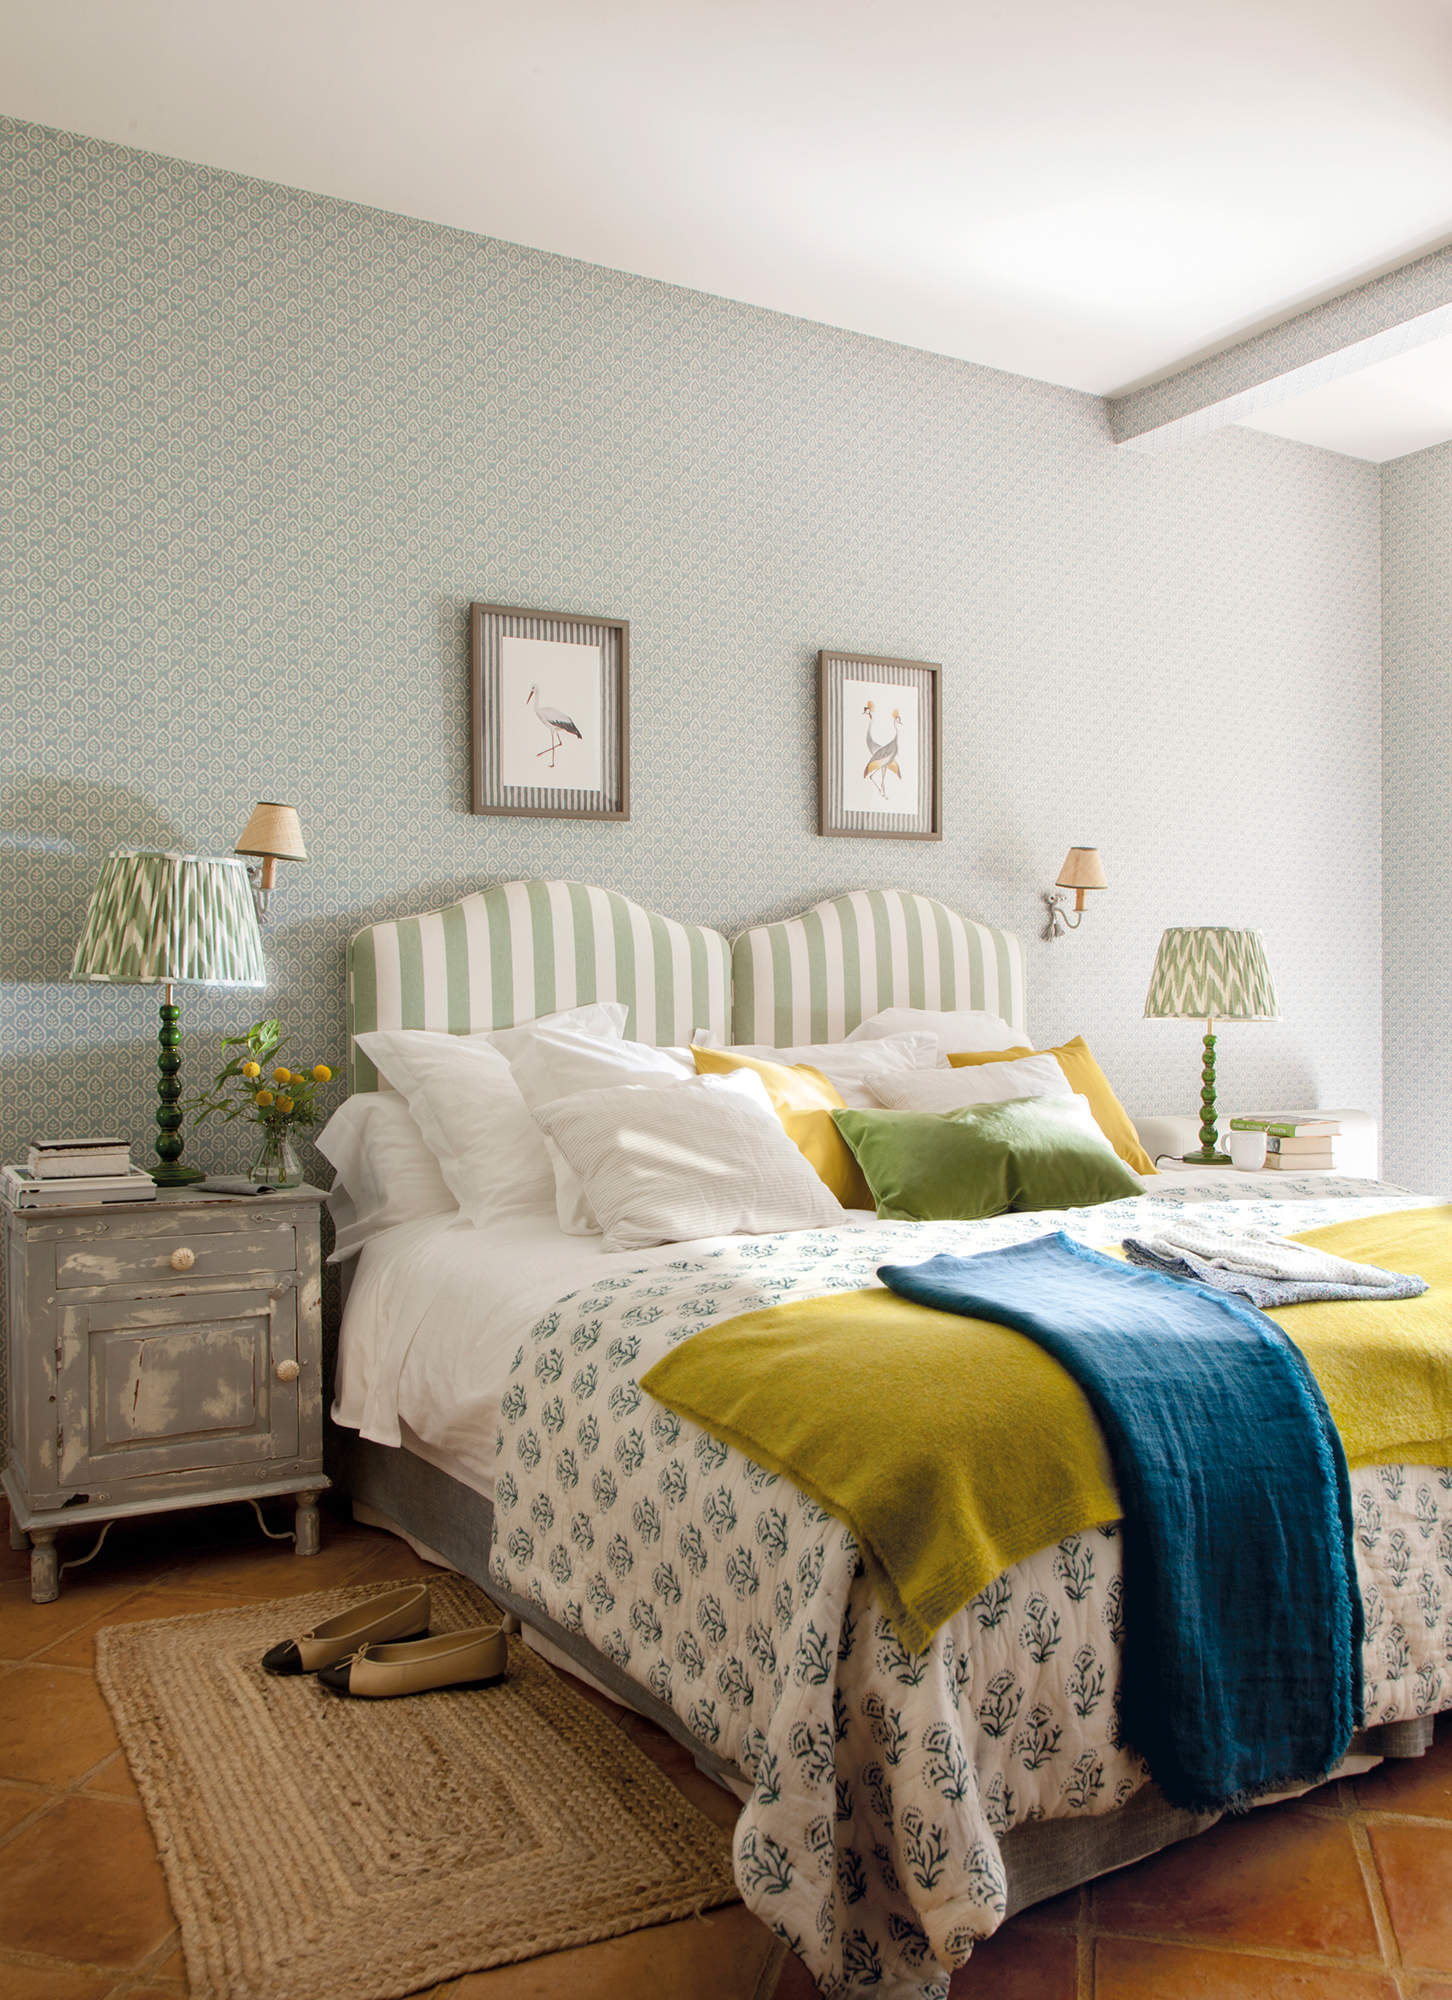 Dormitorio con cabeceros de rayas verdes.